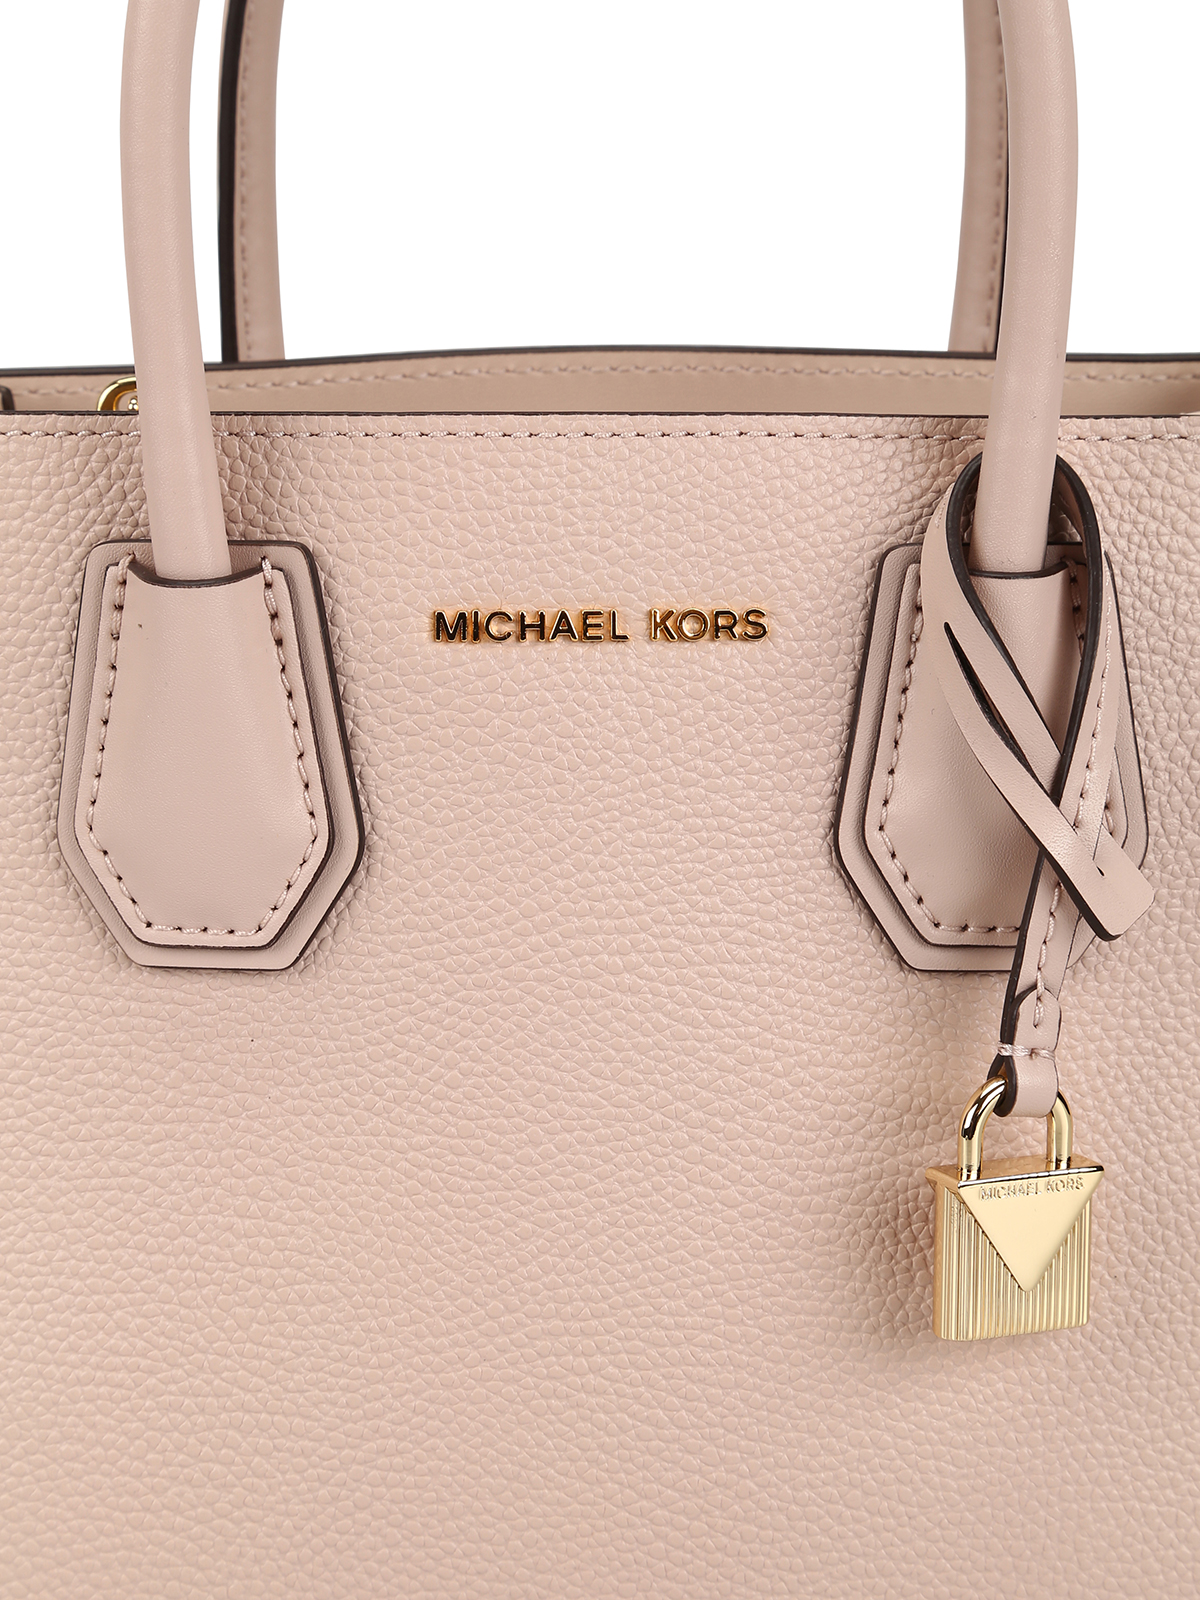 Michael Kors, Bags, Michael Kors Tote Bag In Light Pink